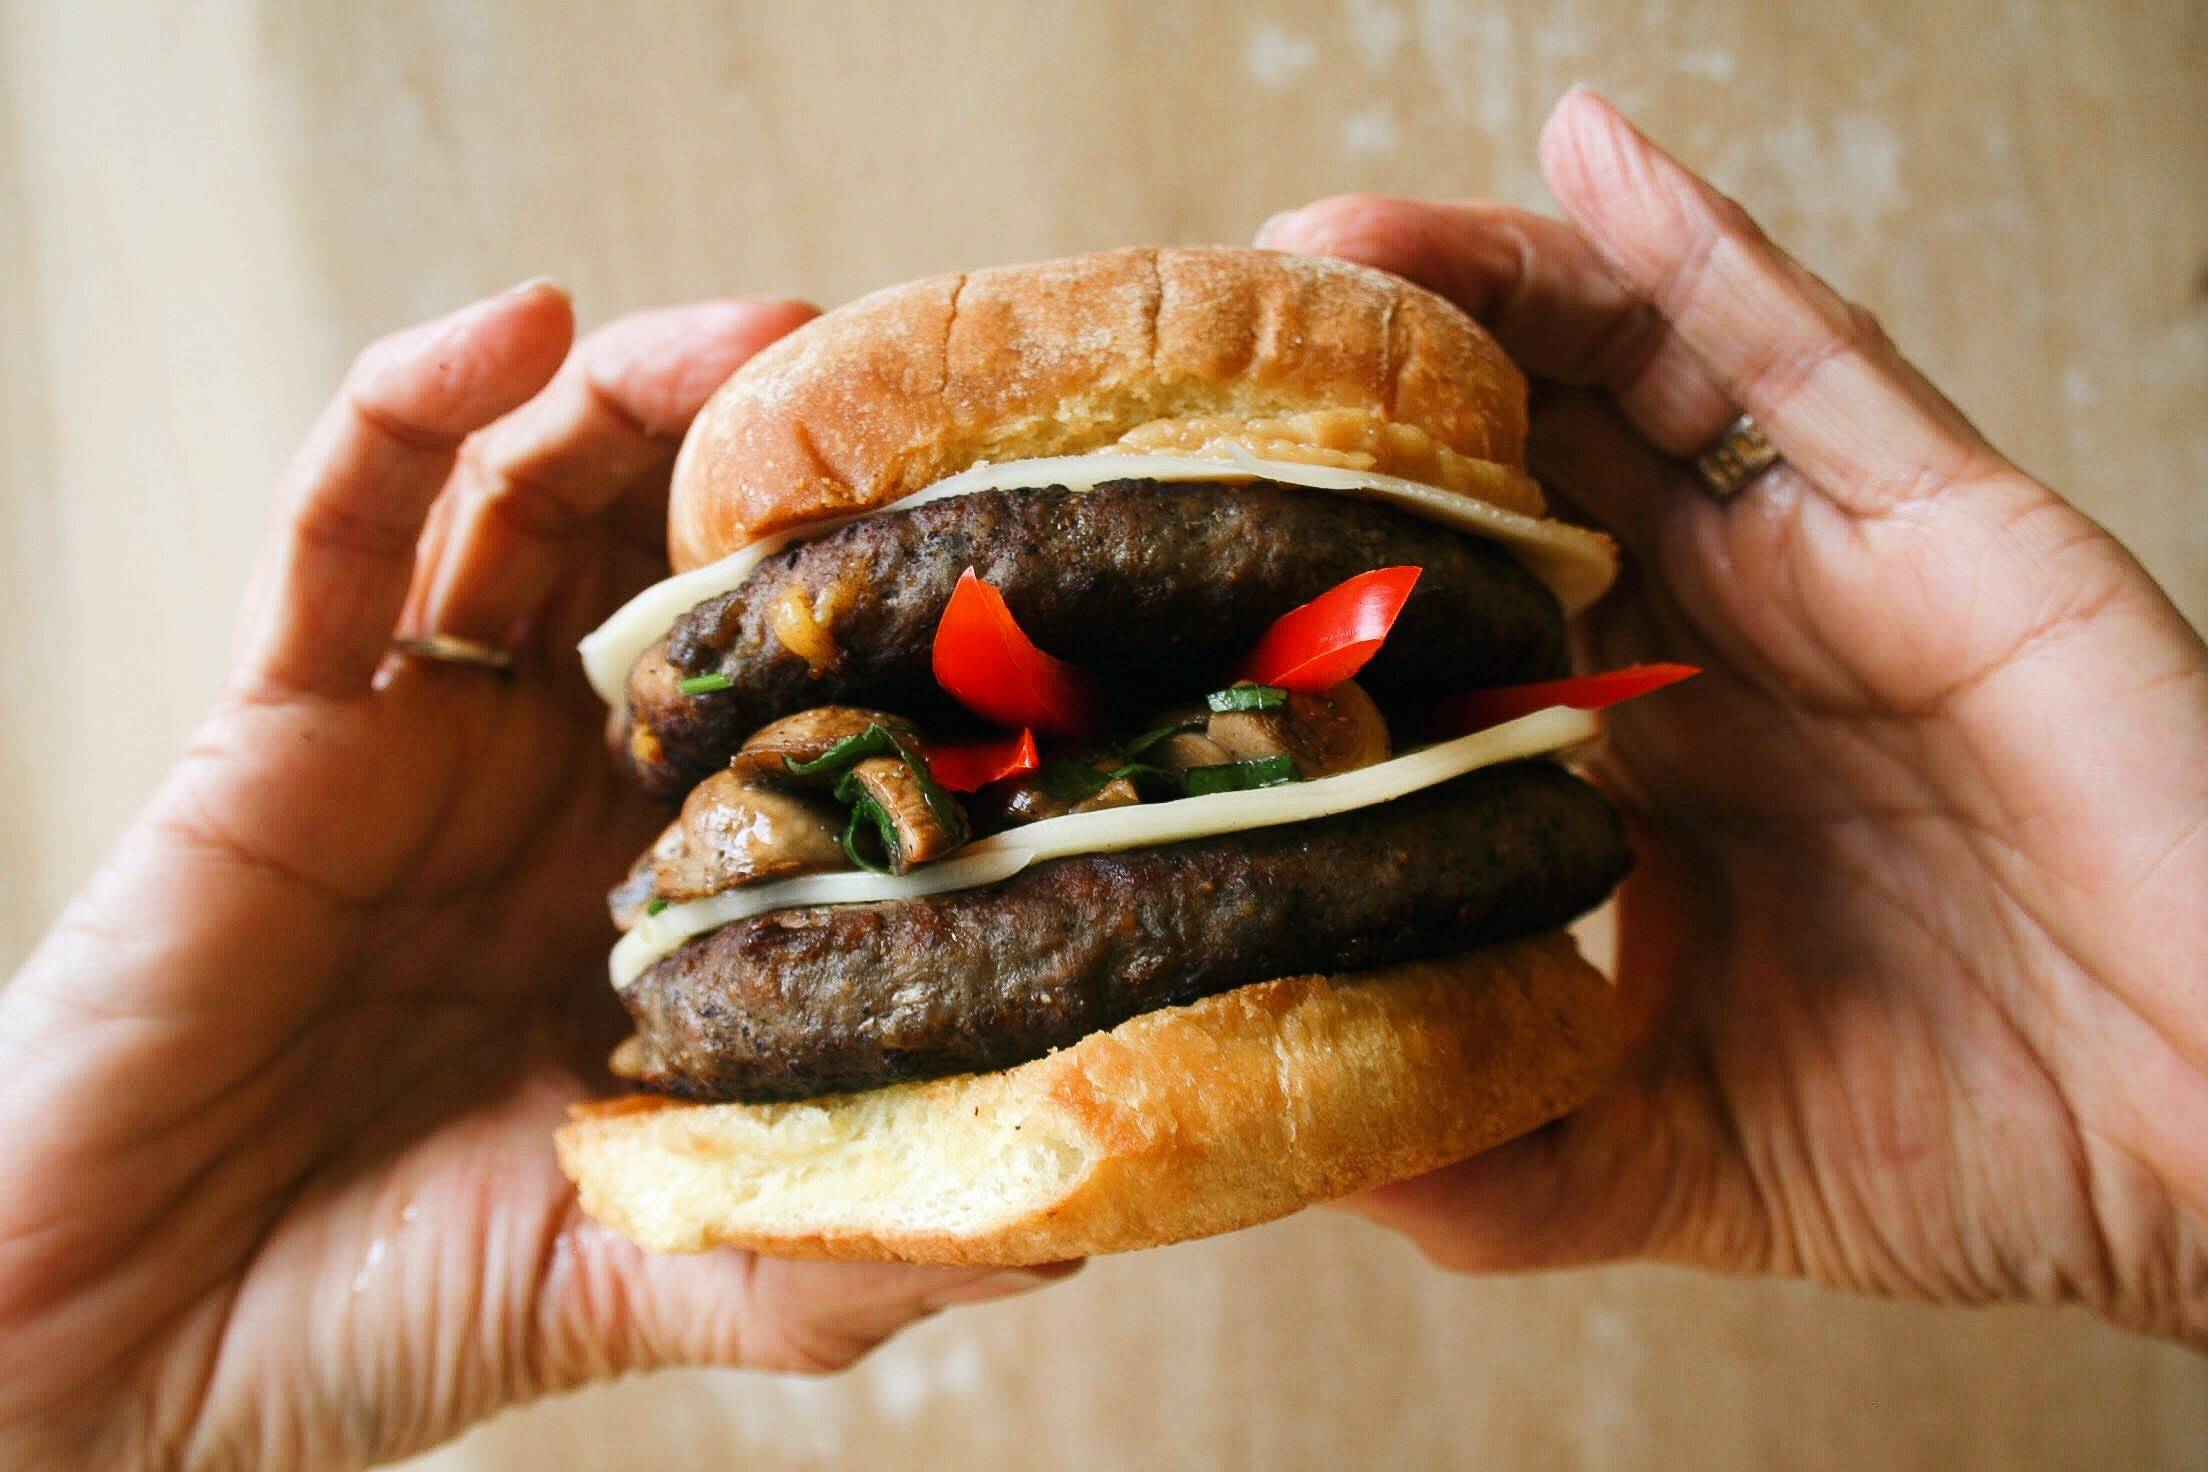 Blended Burger - grateful burger in hands